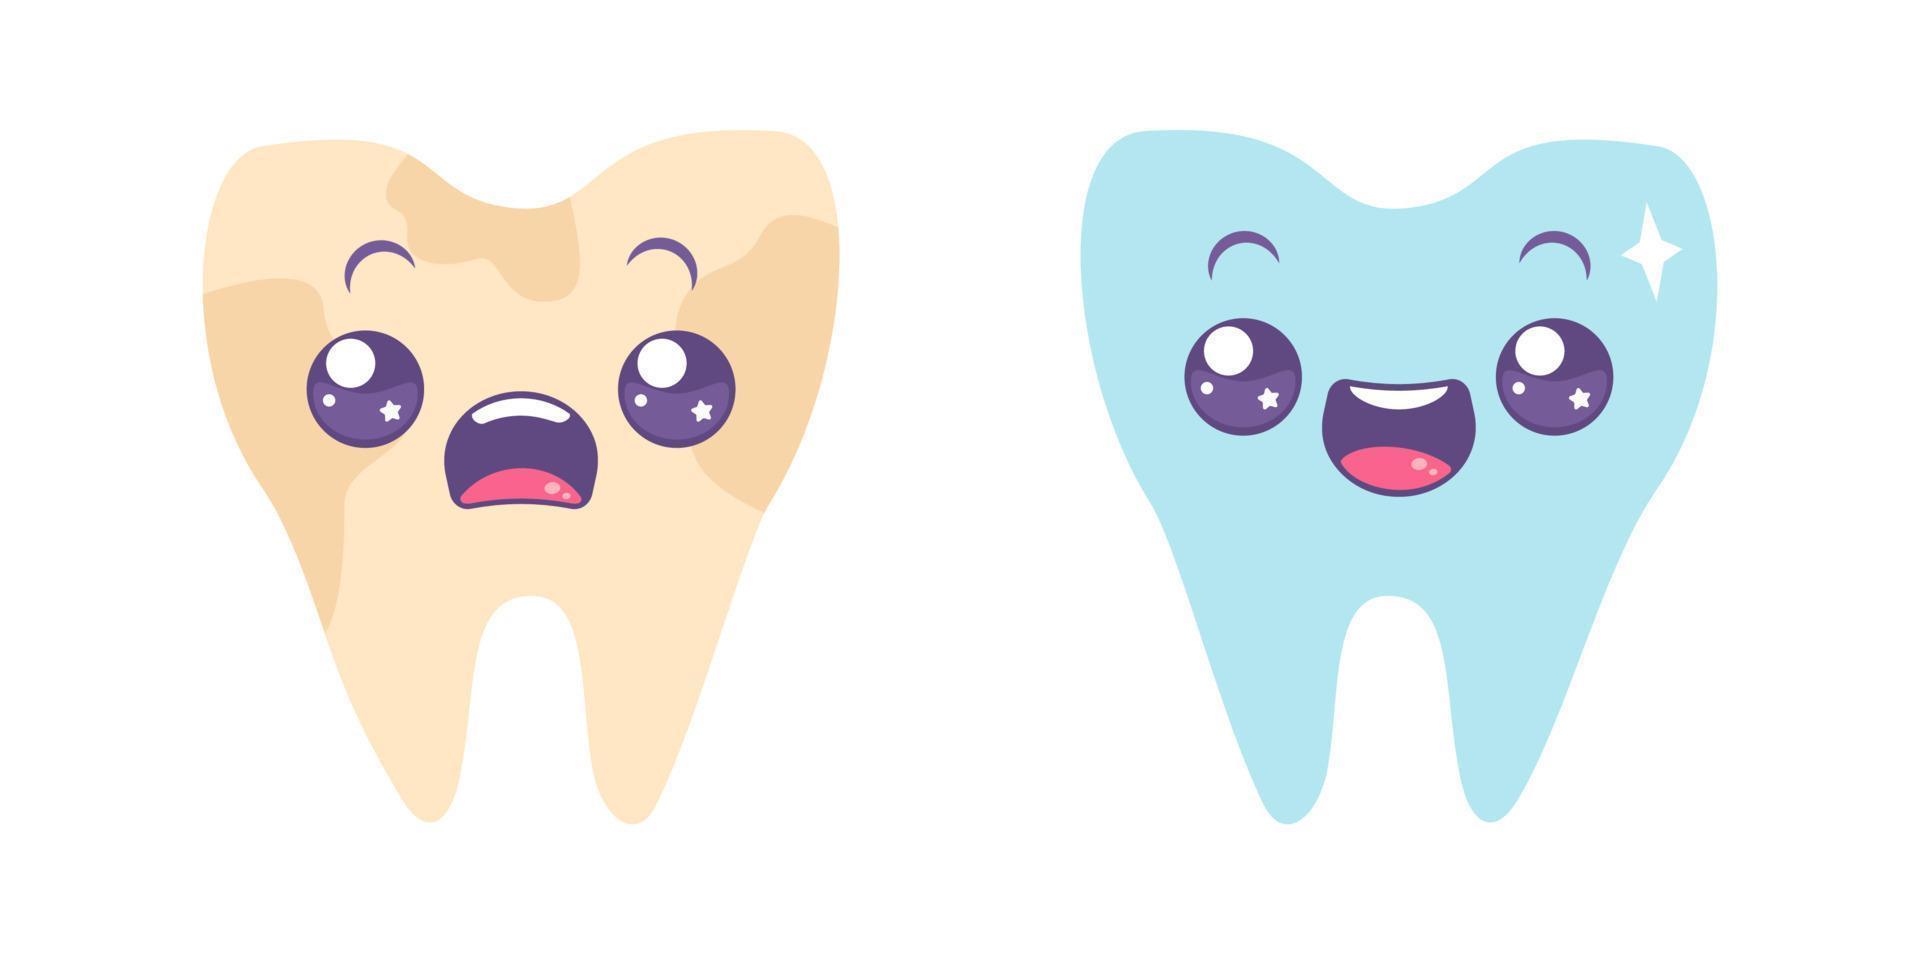 vector set iconos de dientes sucios y dientes blancos. ilustración de diente en estilo kawaii.